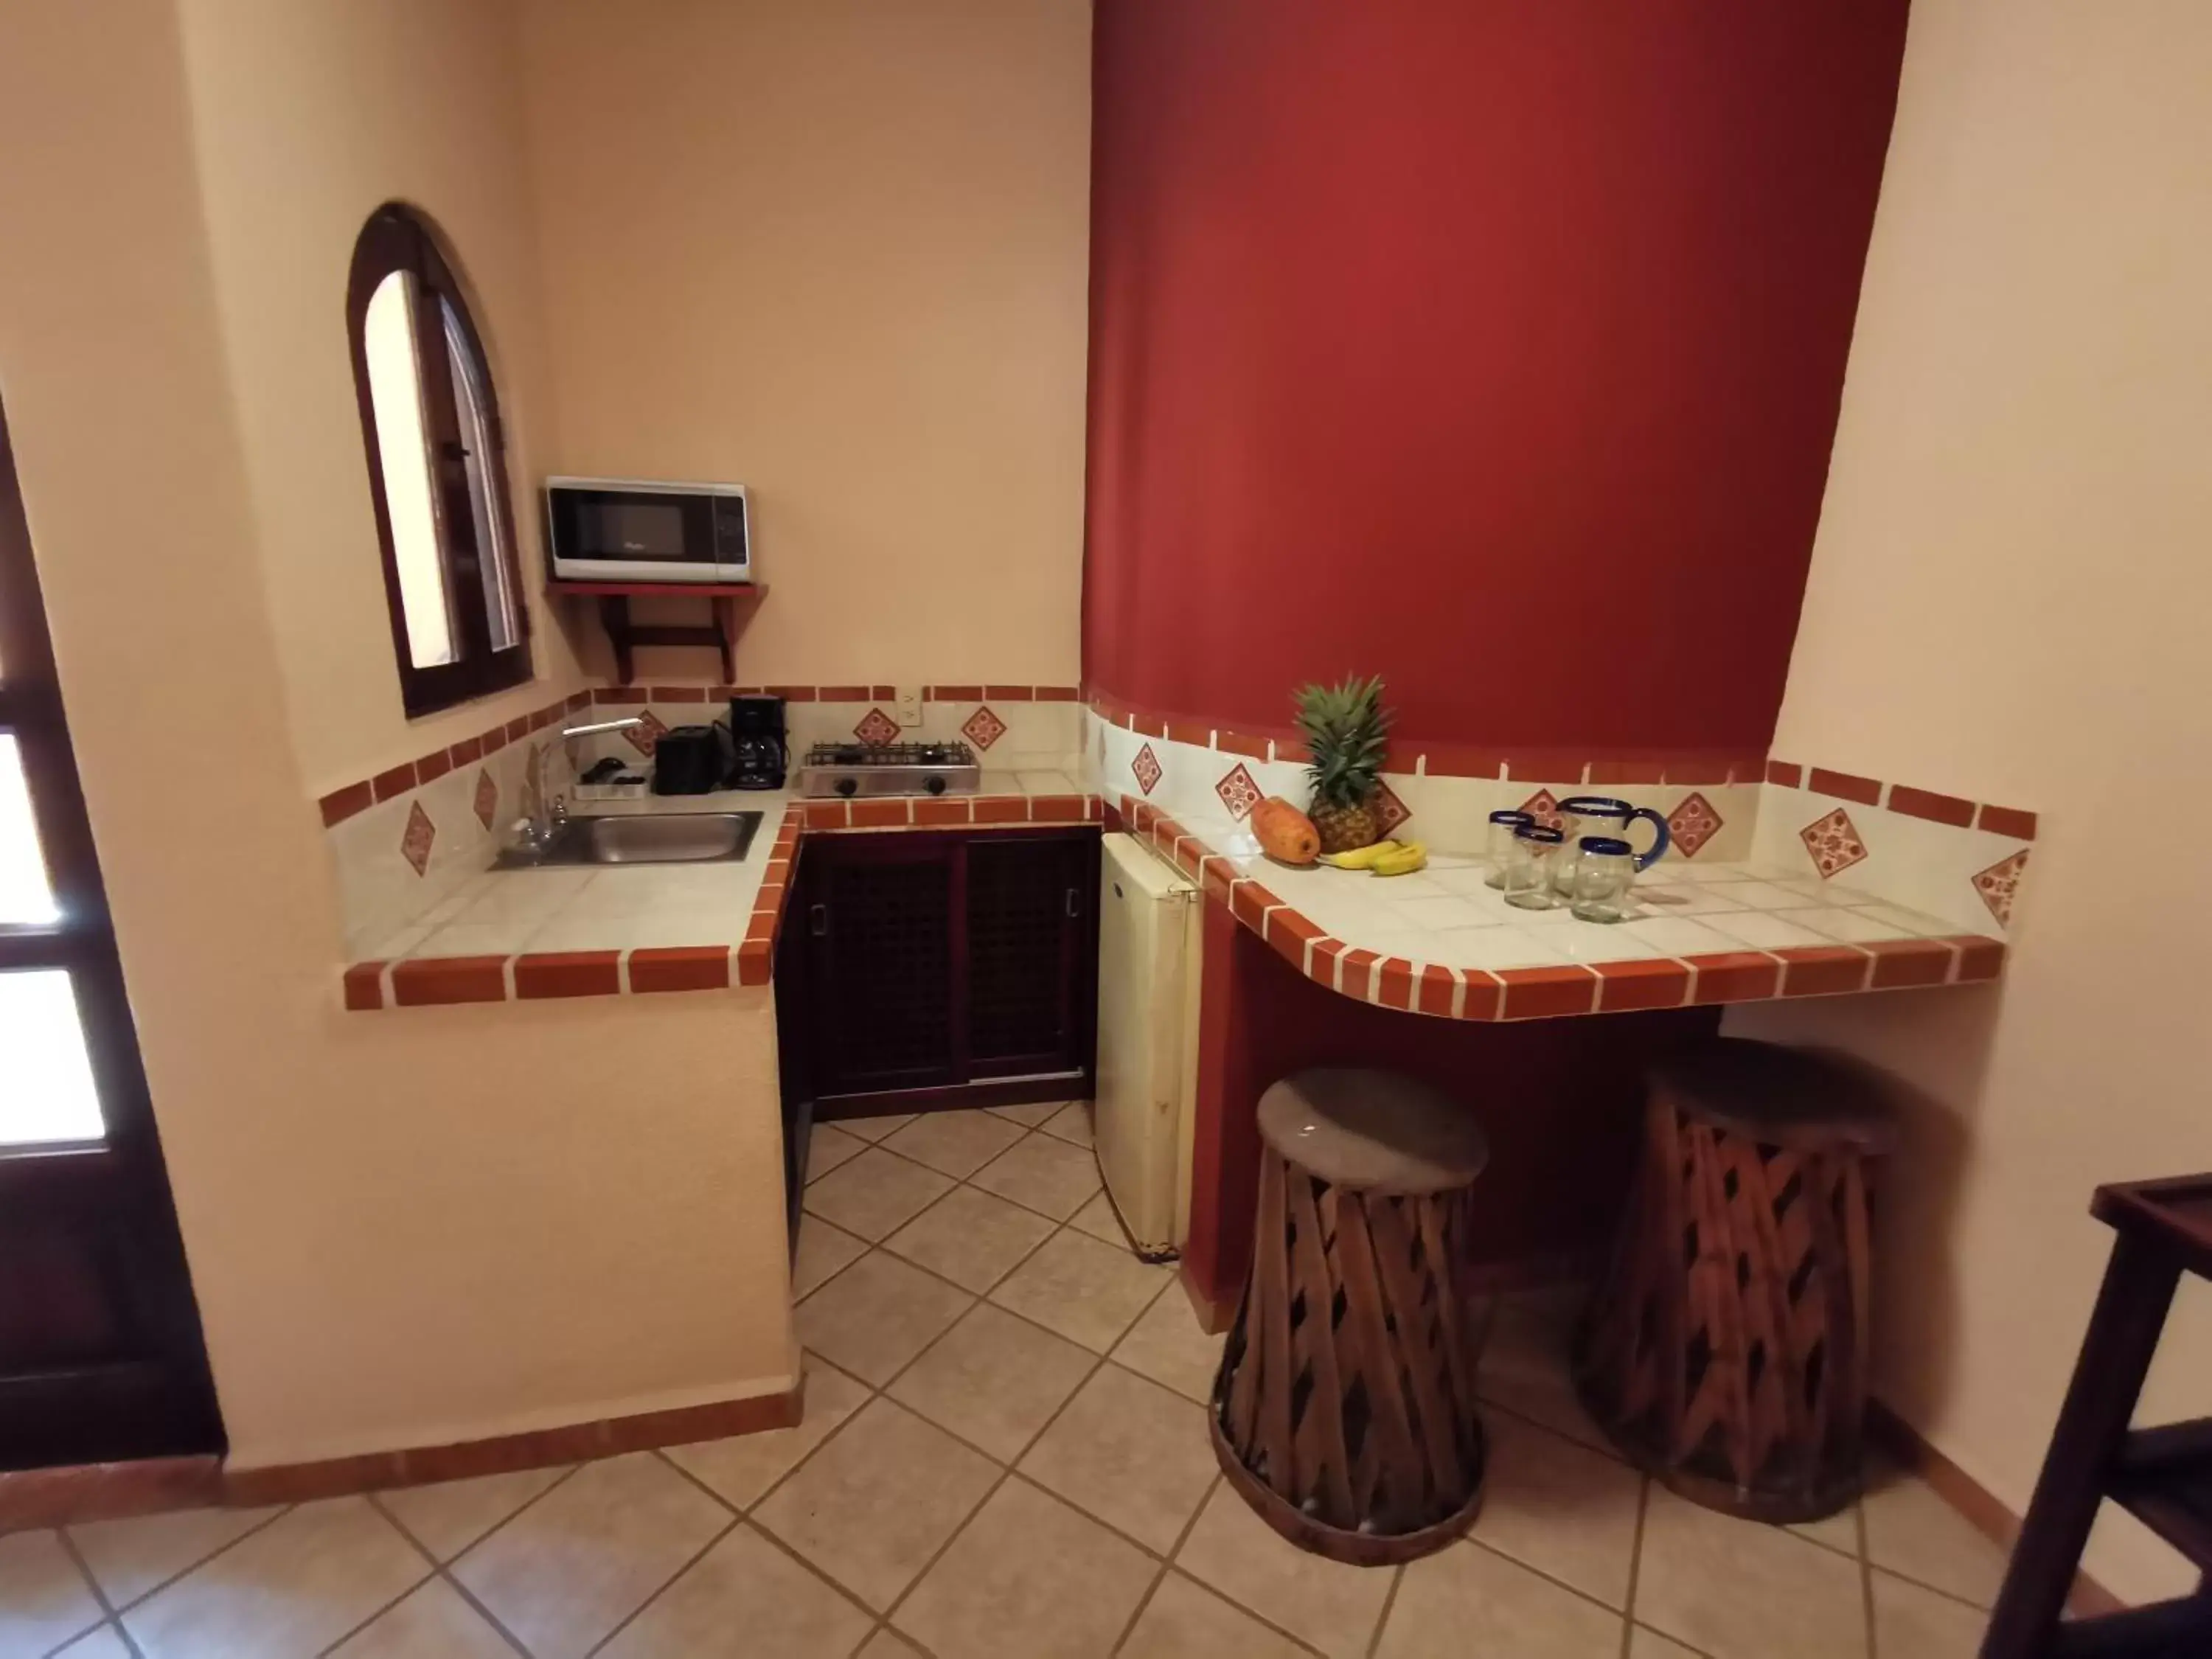 Kitchen/Kitchenette in Villas Vista Suites